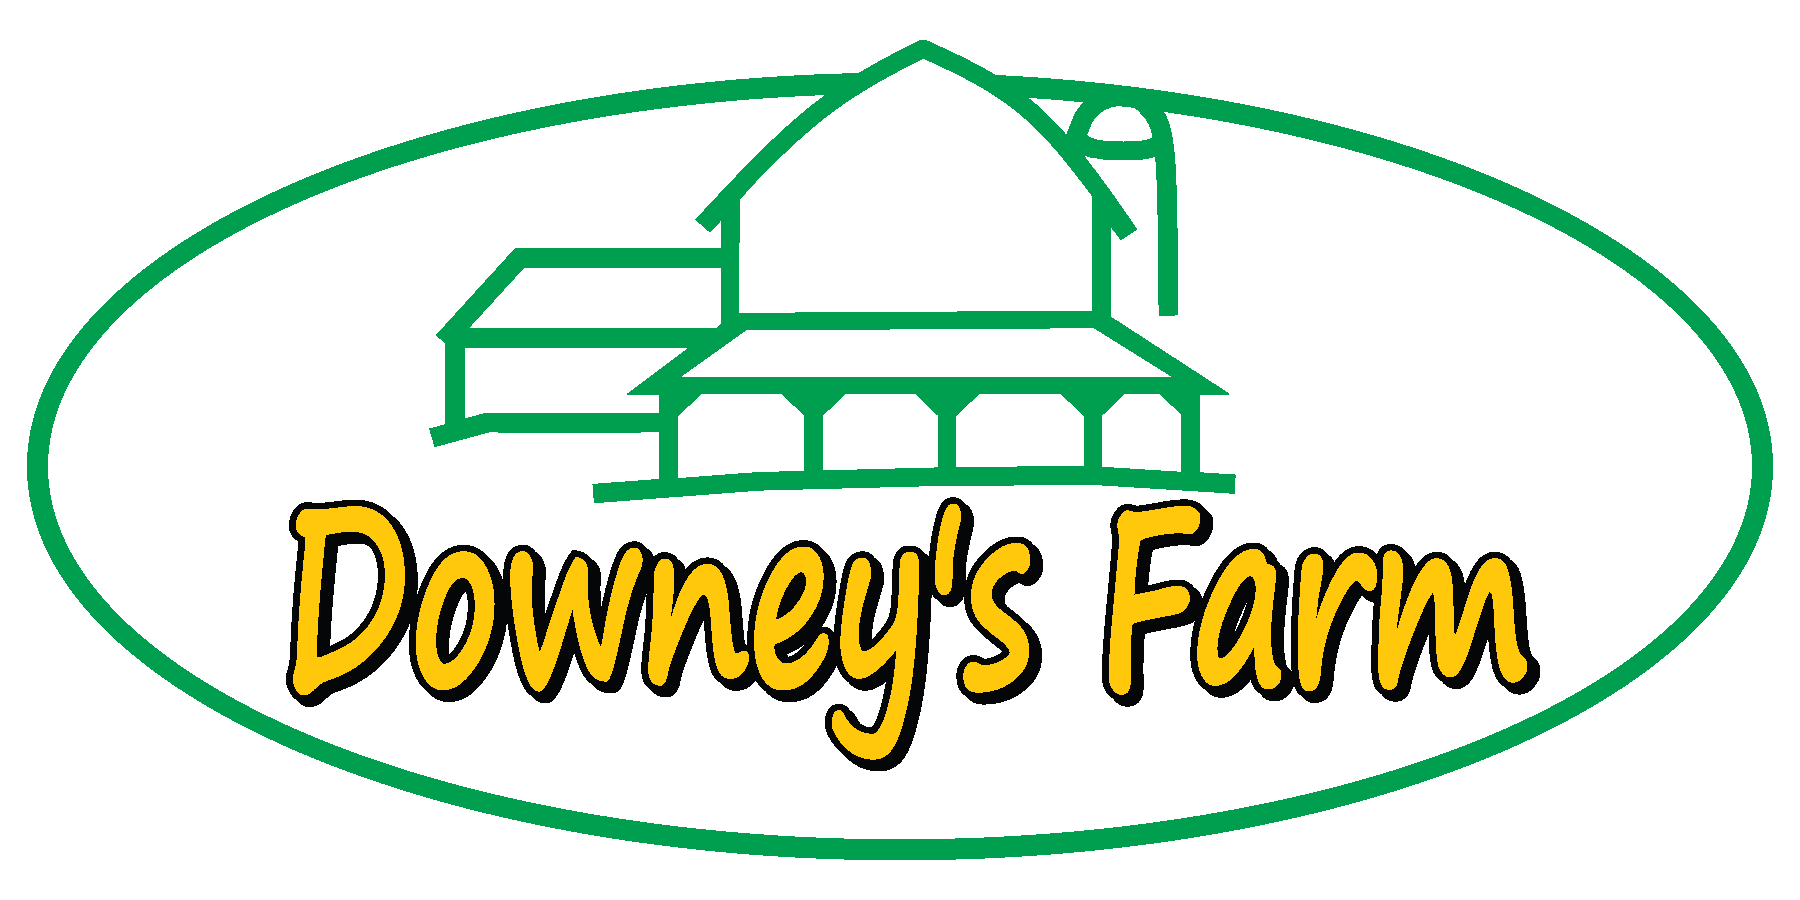 Downey'a Farm